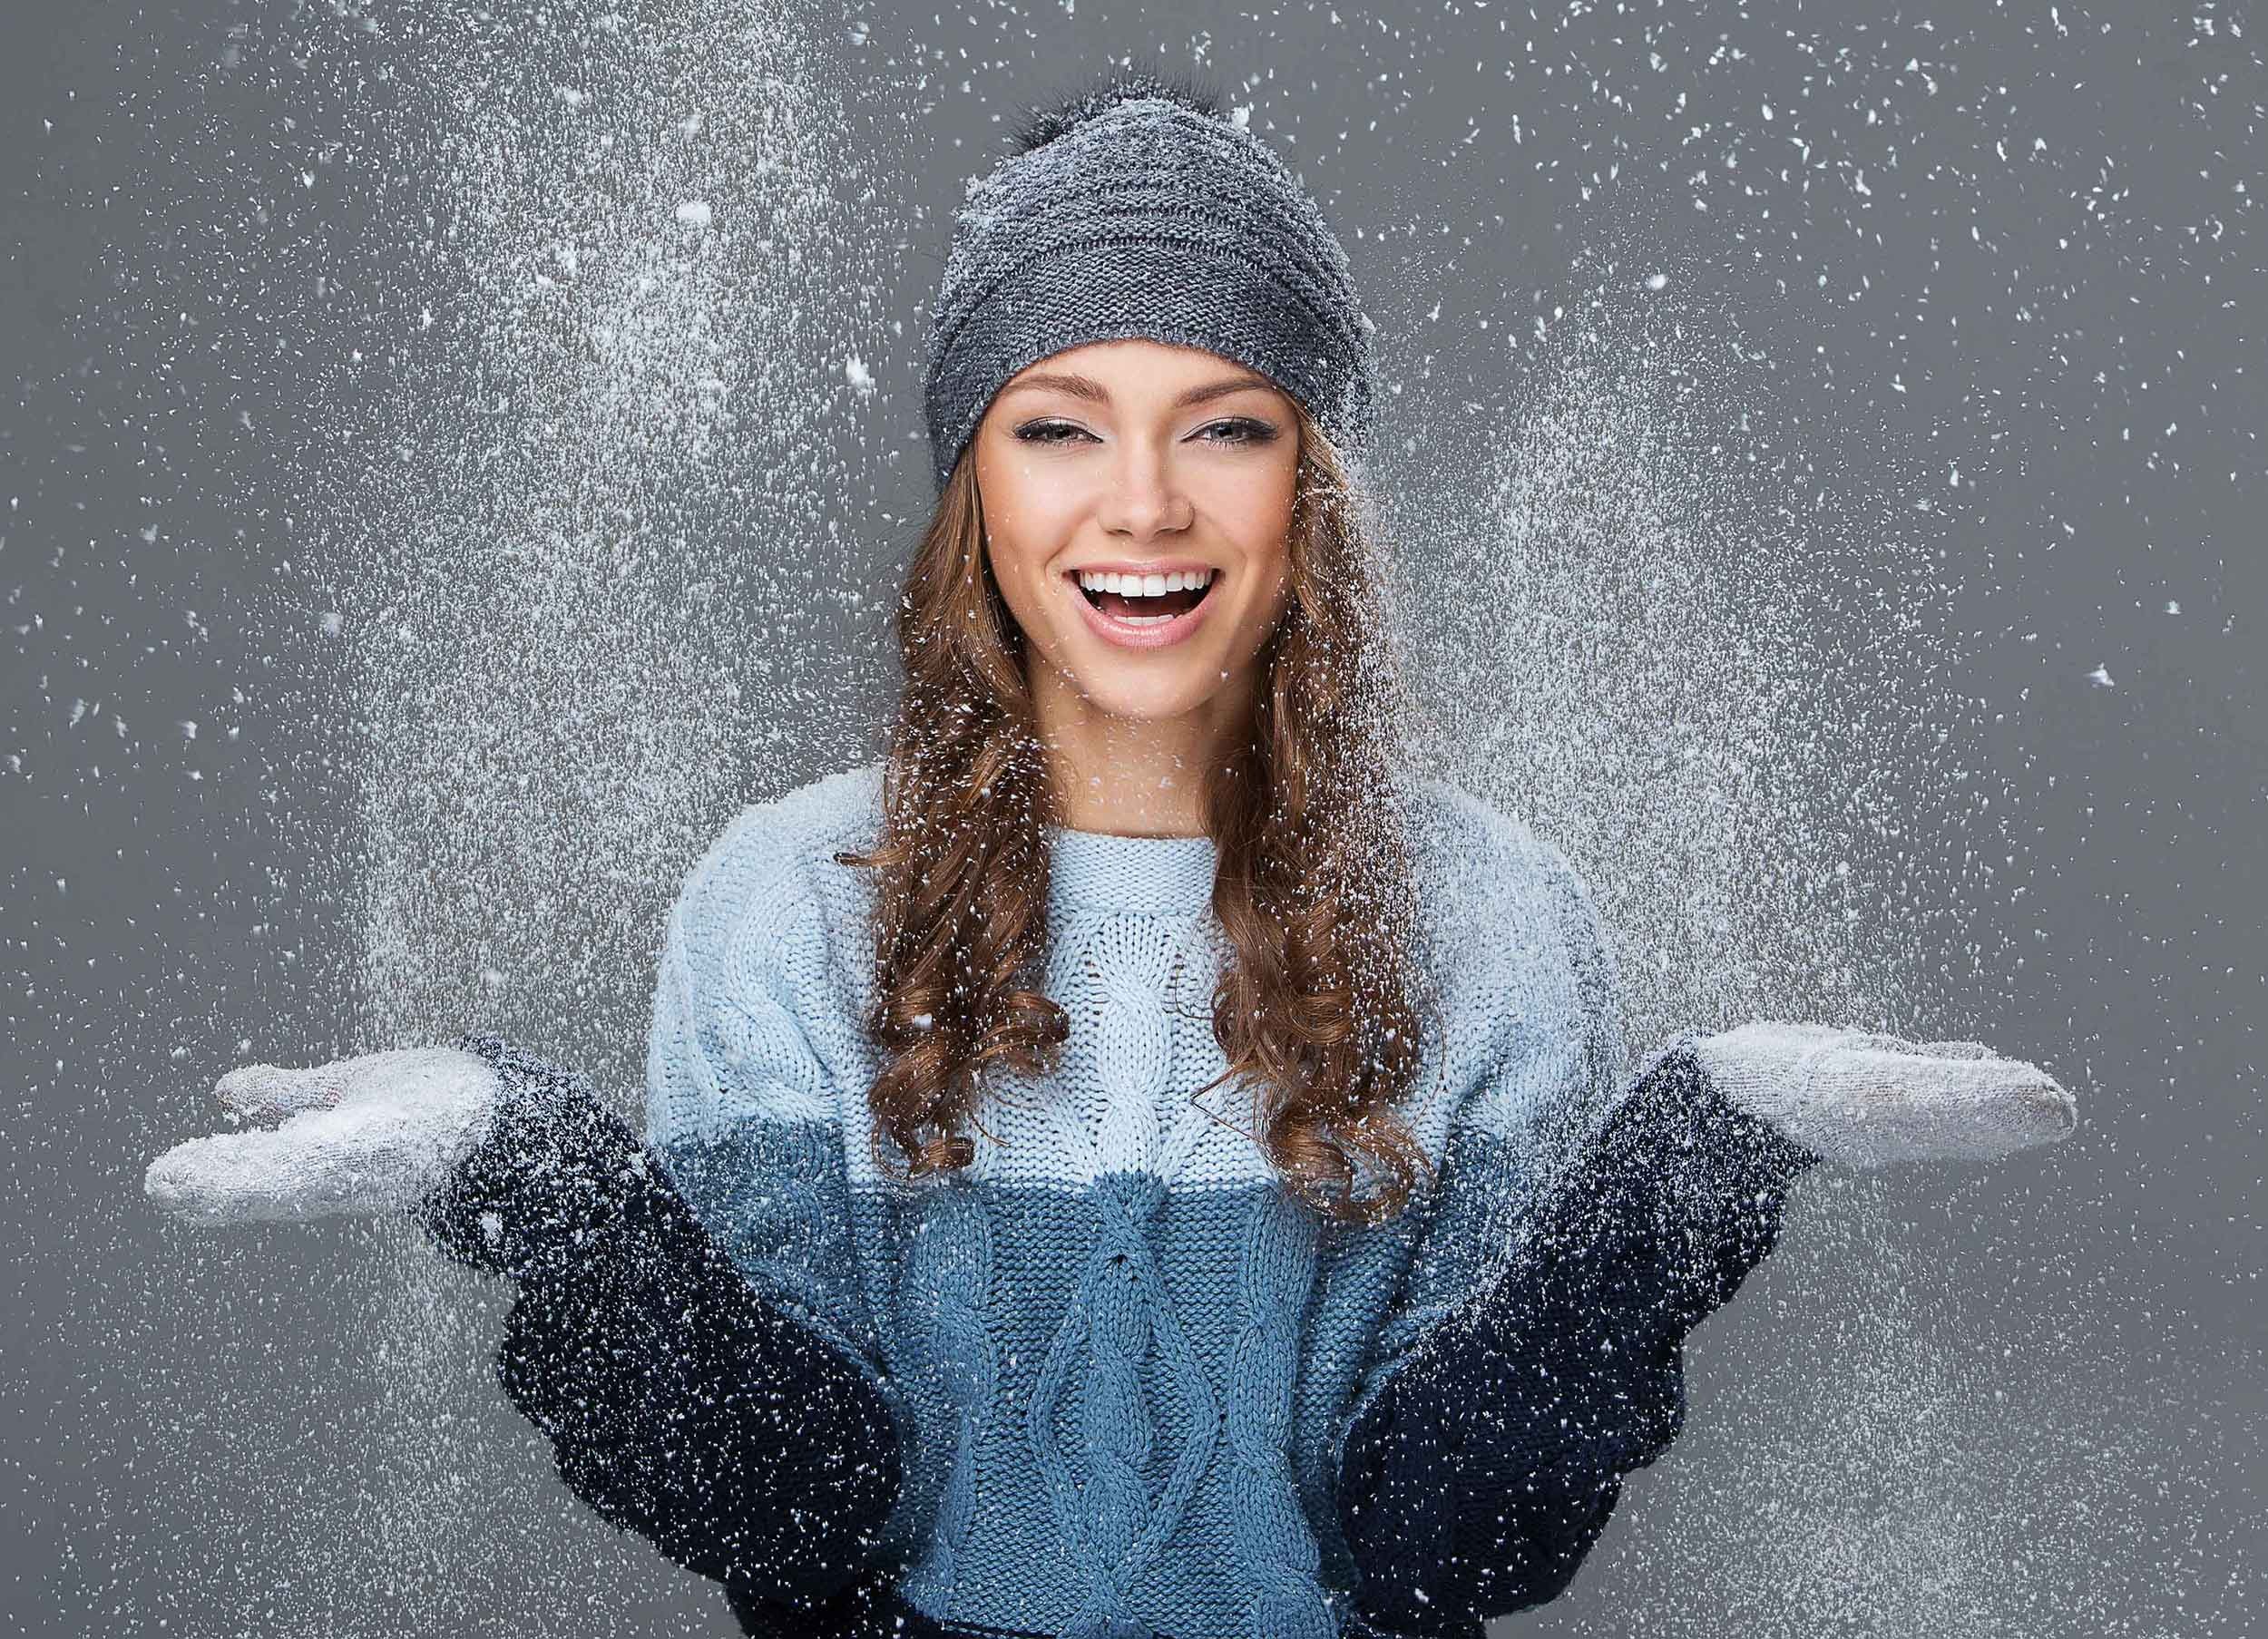 Cuidar la piel cuando hace frío. 7 consejos para tener buena cara en invierno